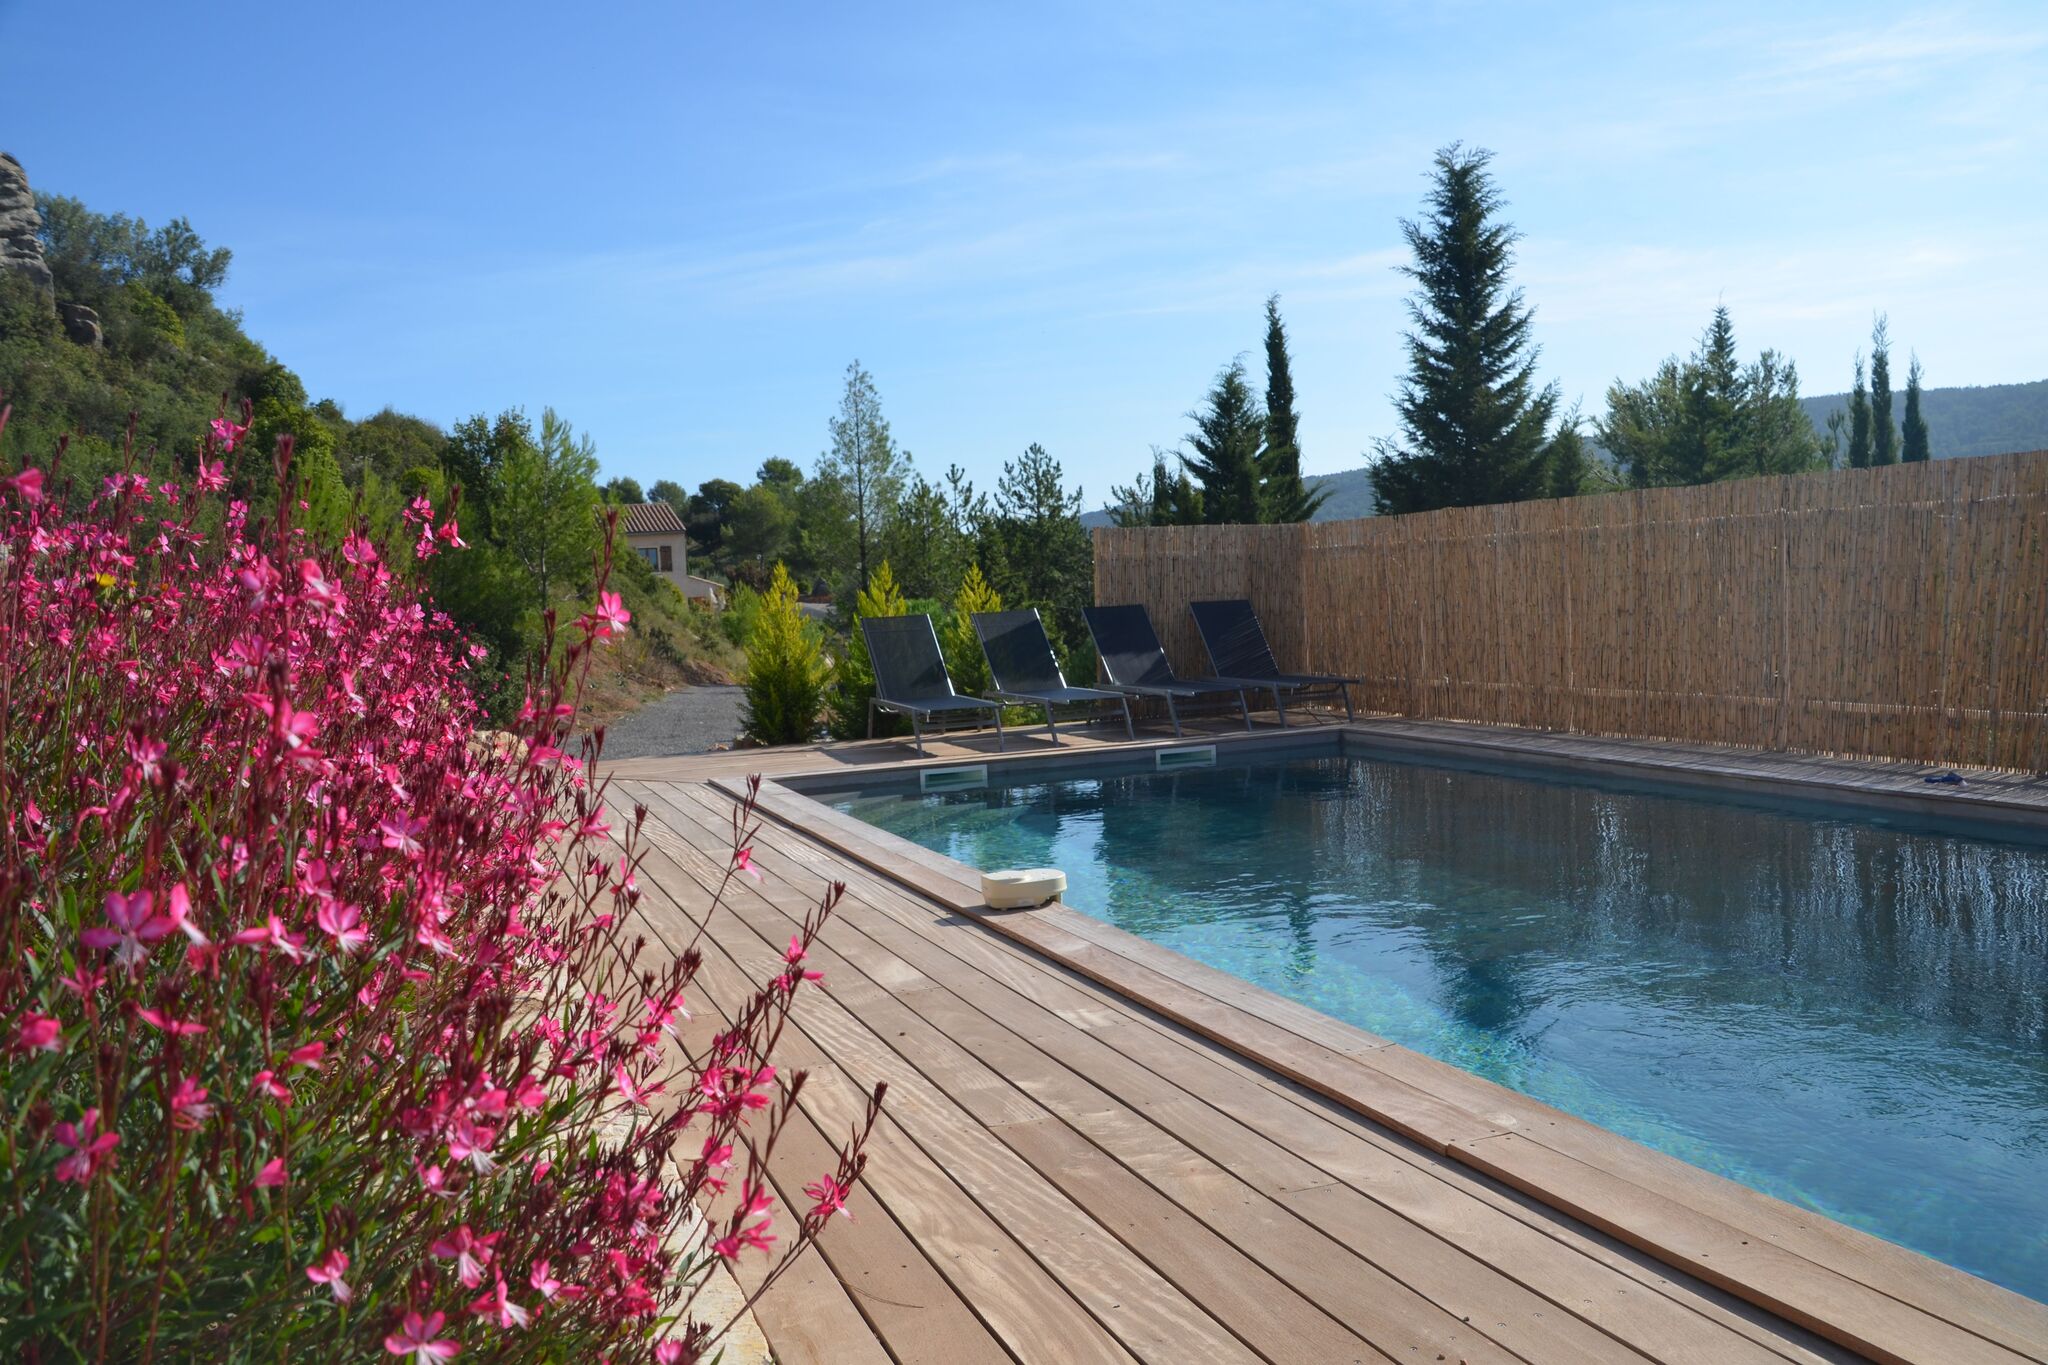 Stijlvolle villa in Beaufort met privé zwembad, gehele woning voorzien van airco. Netflix aanwezig